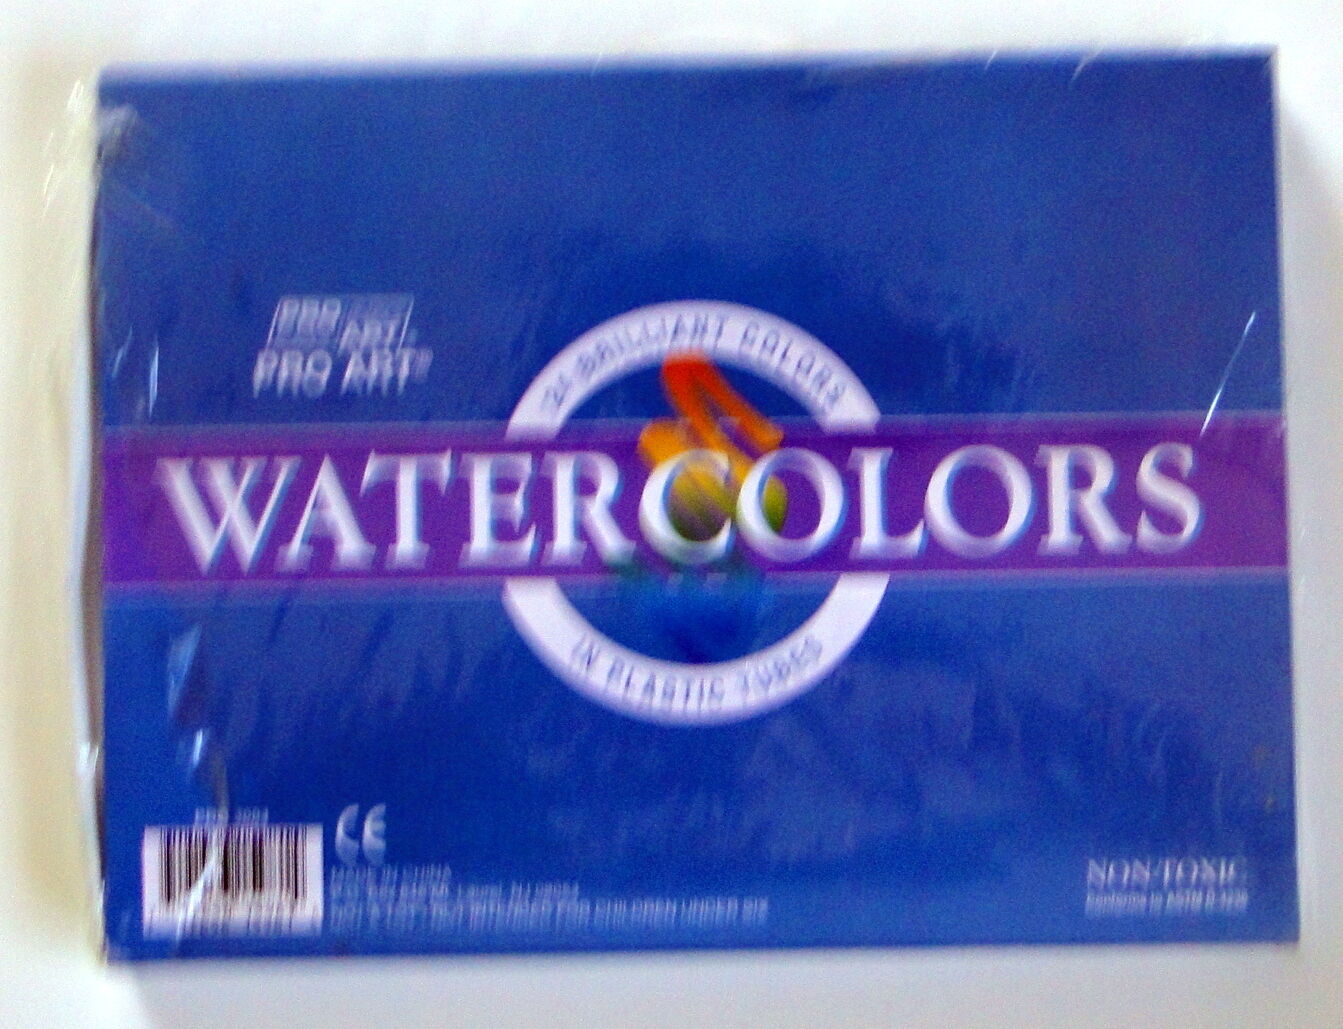 Pro Art Watercolor Paints Tubes 24 Brilliant colors, Non Toxic 